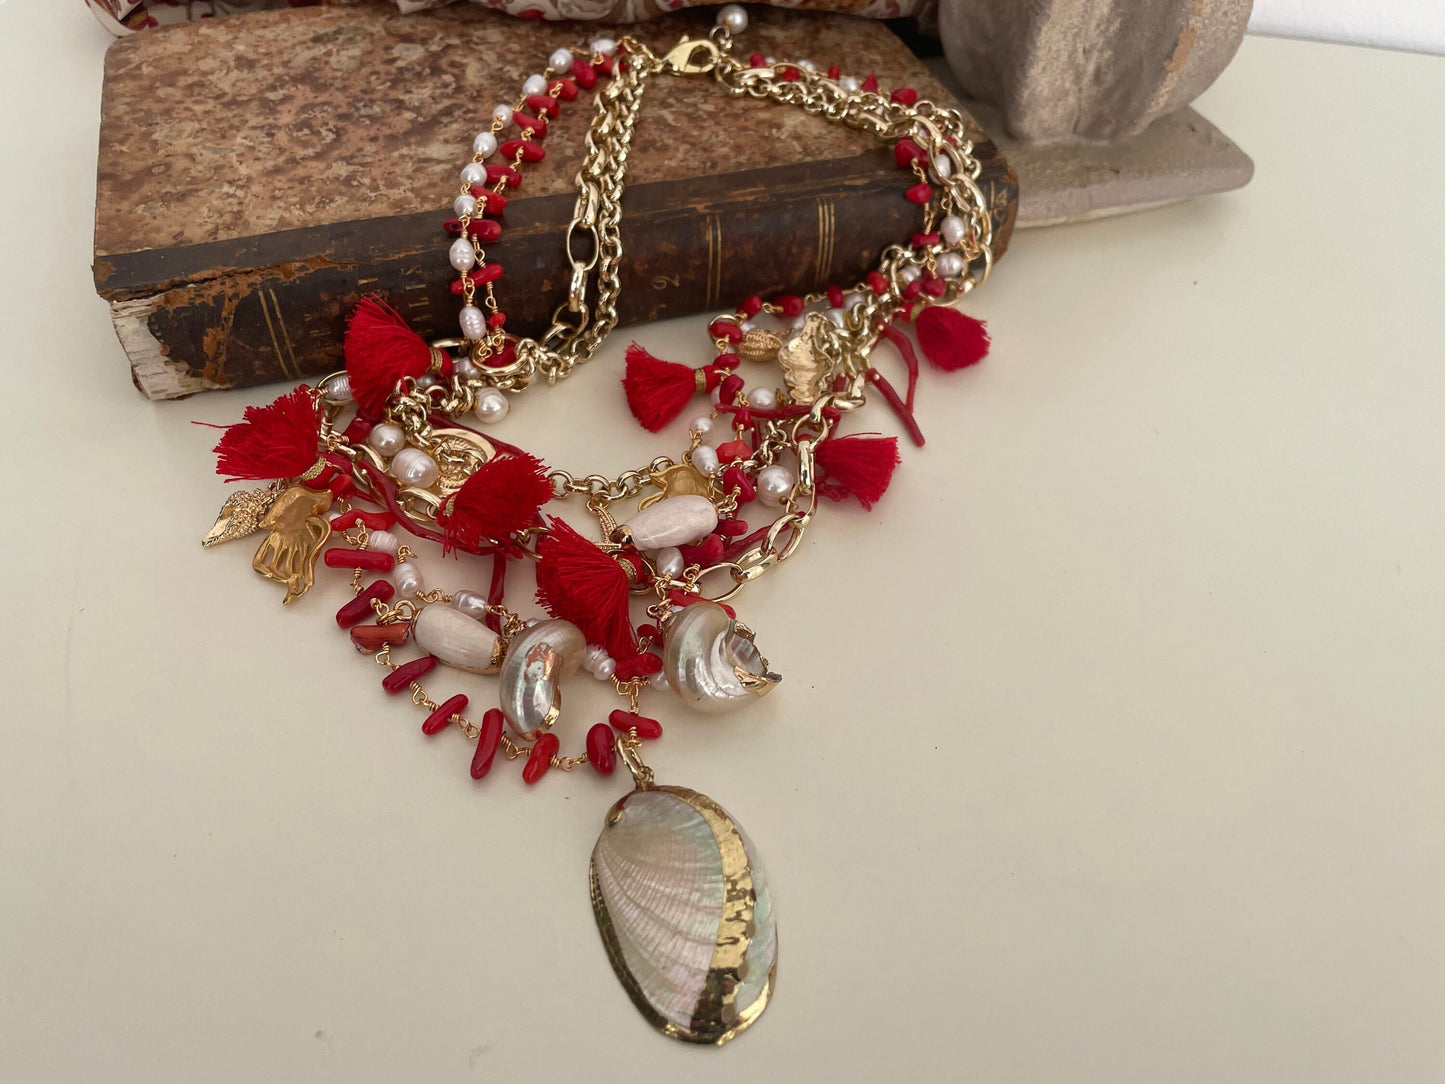 Collana con quattro fili misti, catena a maglia e catena rosario, corallo, conchiglie e nappe. colore rosso.=